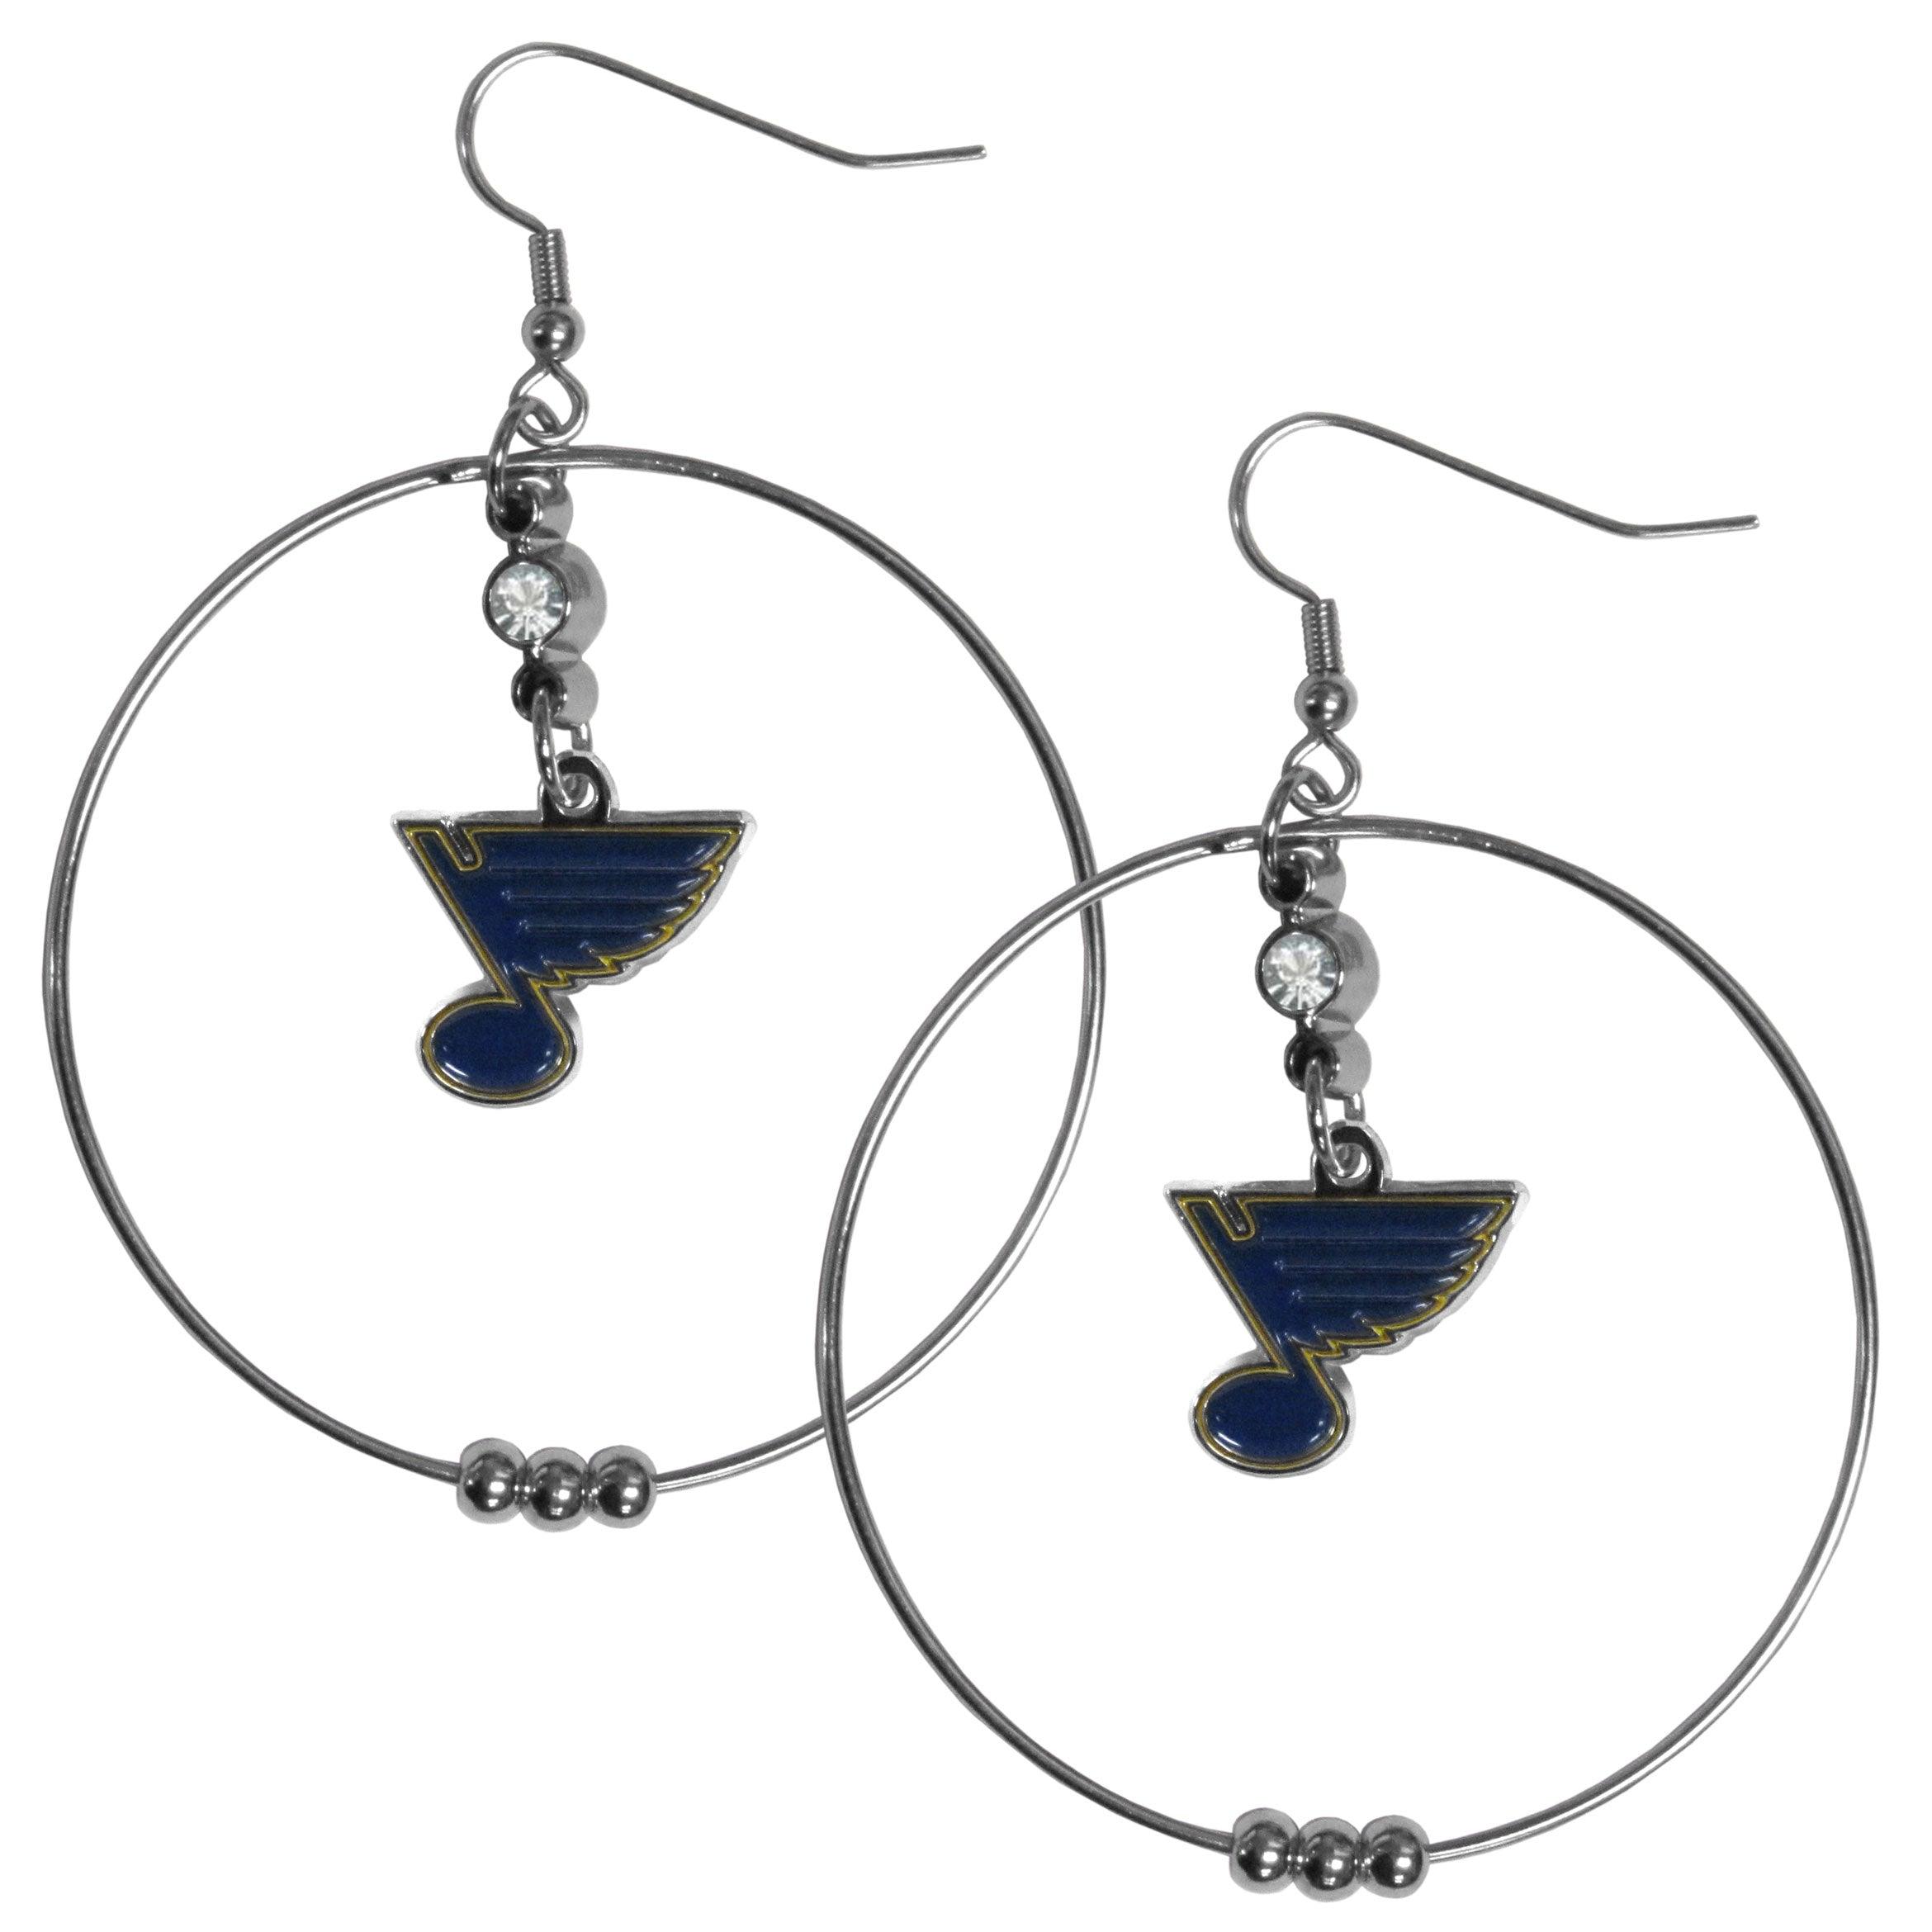 St. Louis Blues Earrings 